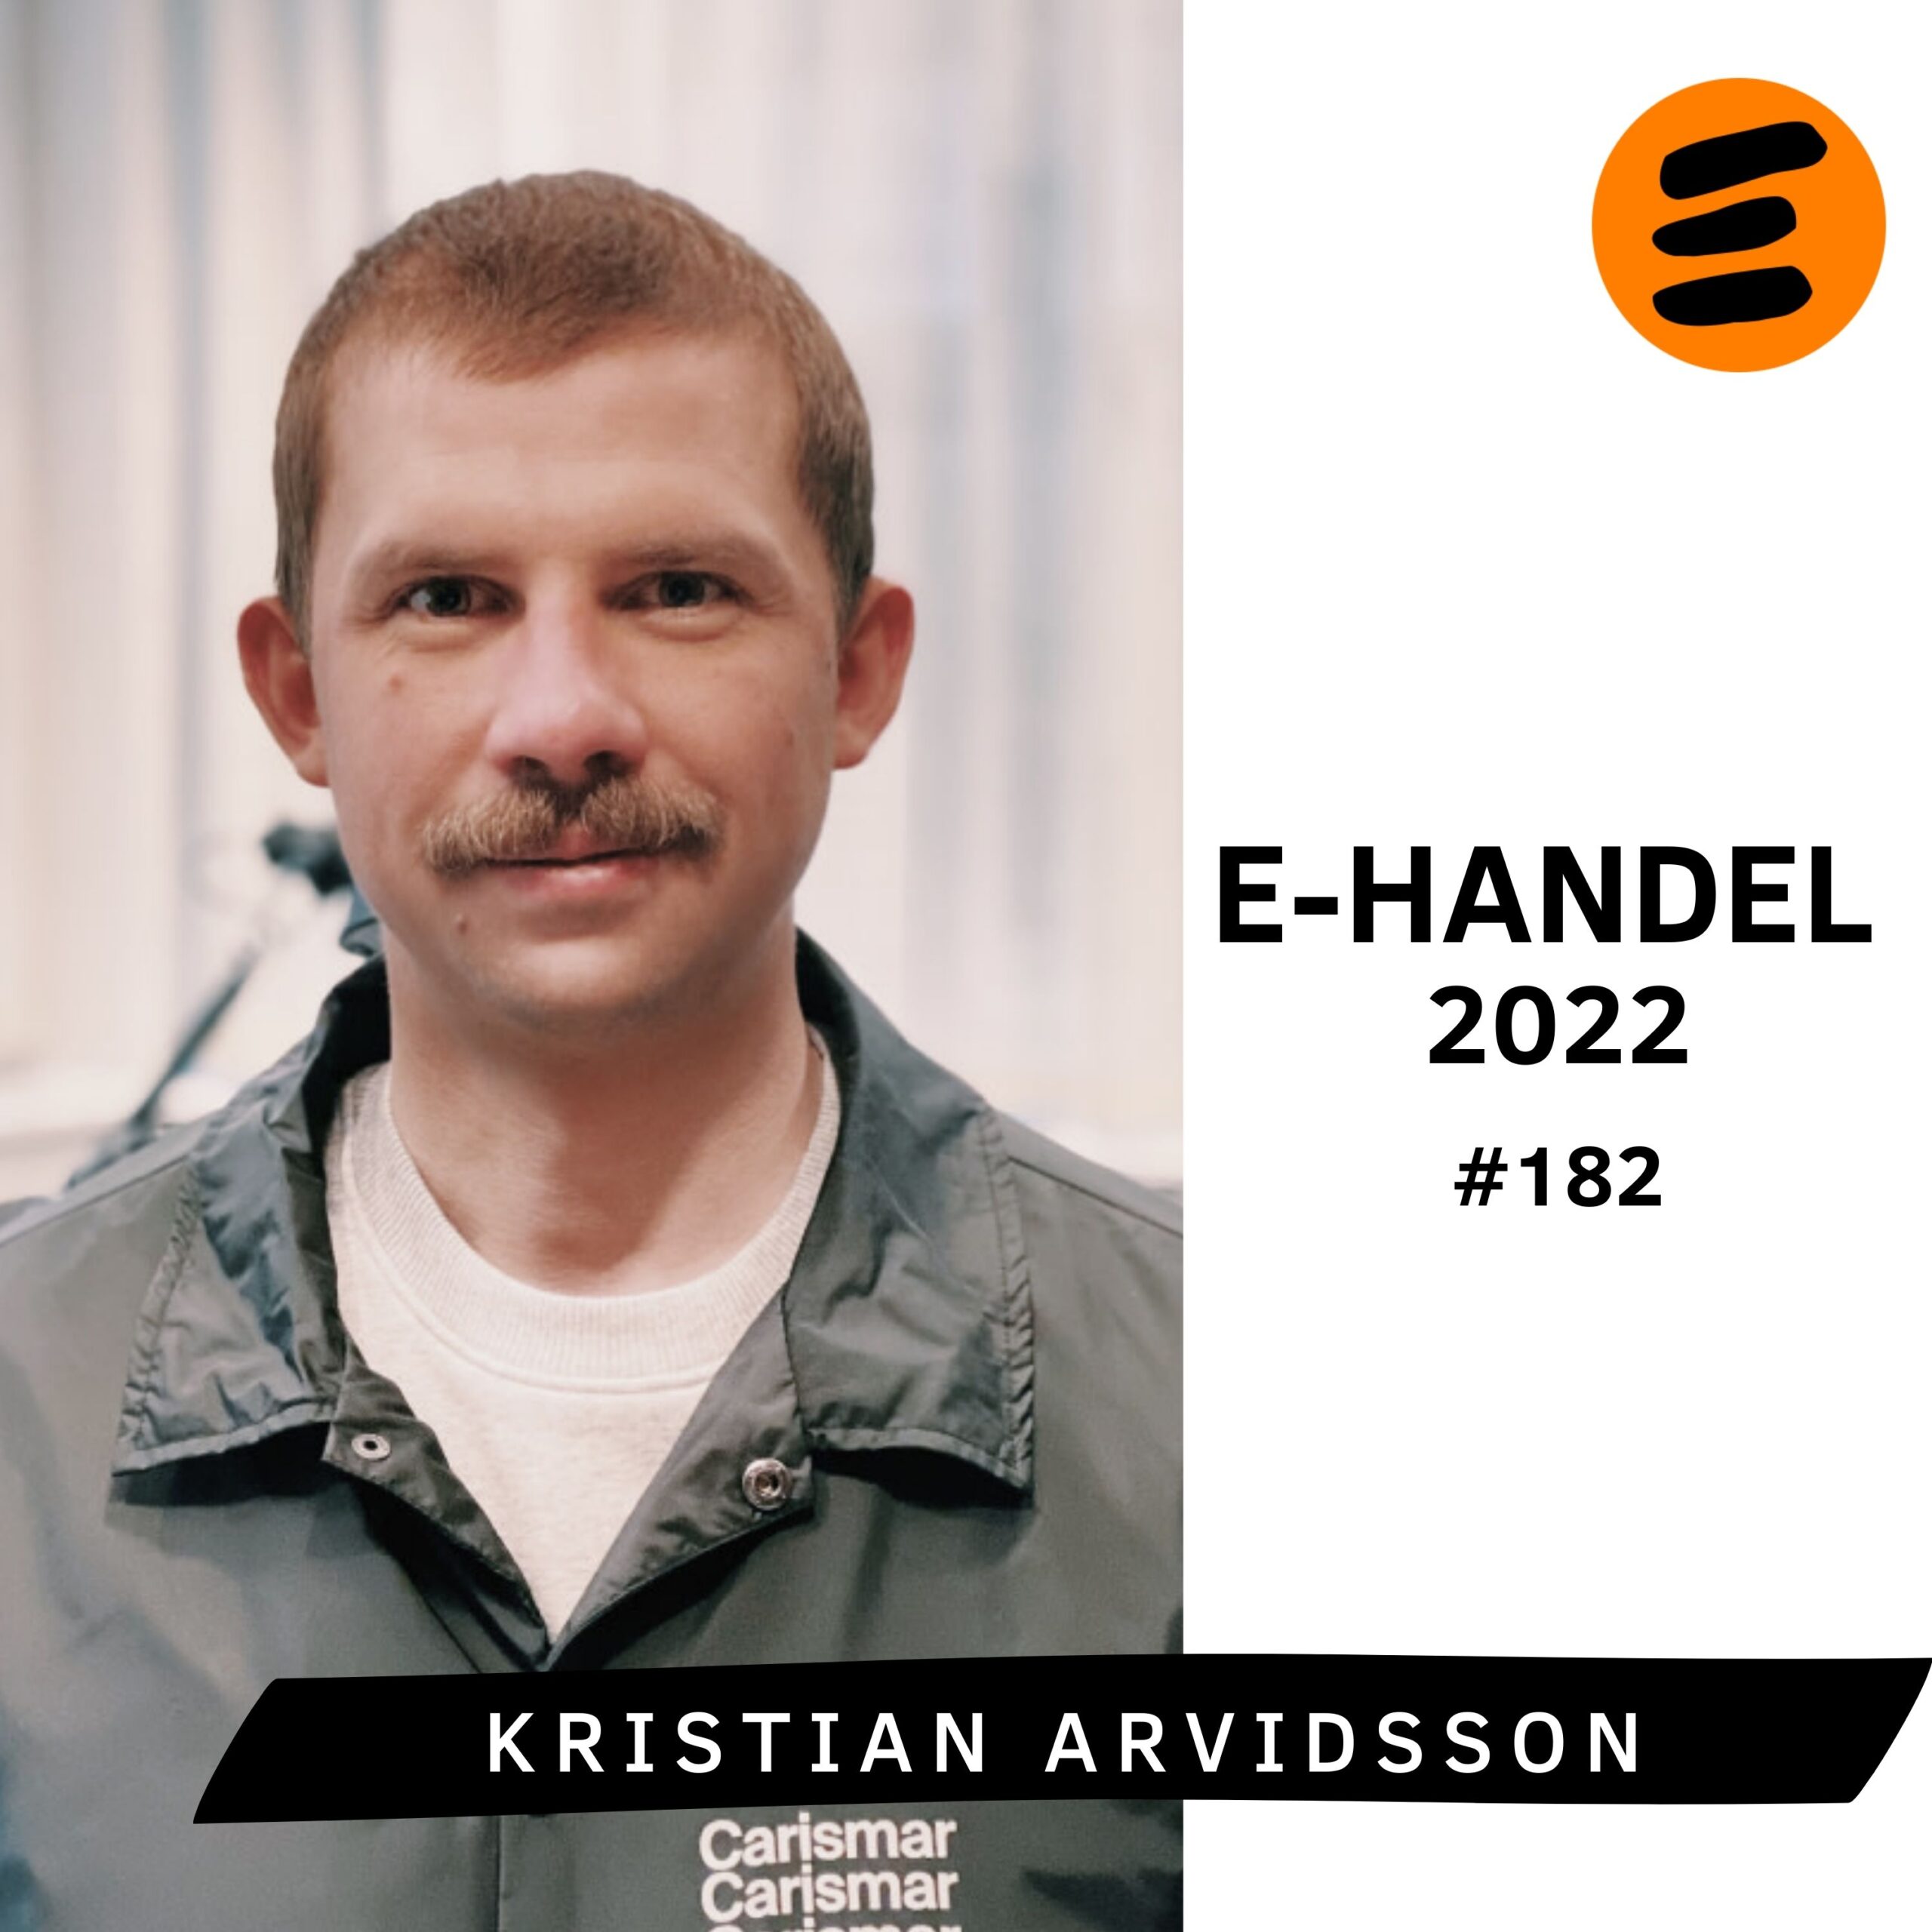 E-handel 2022. Kristian Arvidsson (#182)